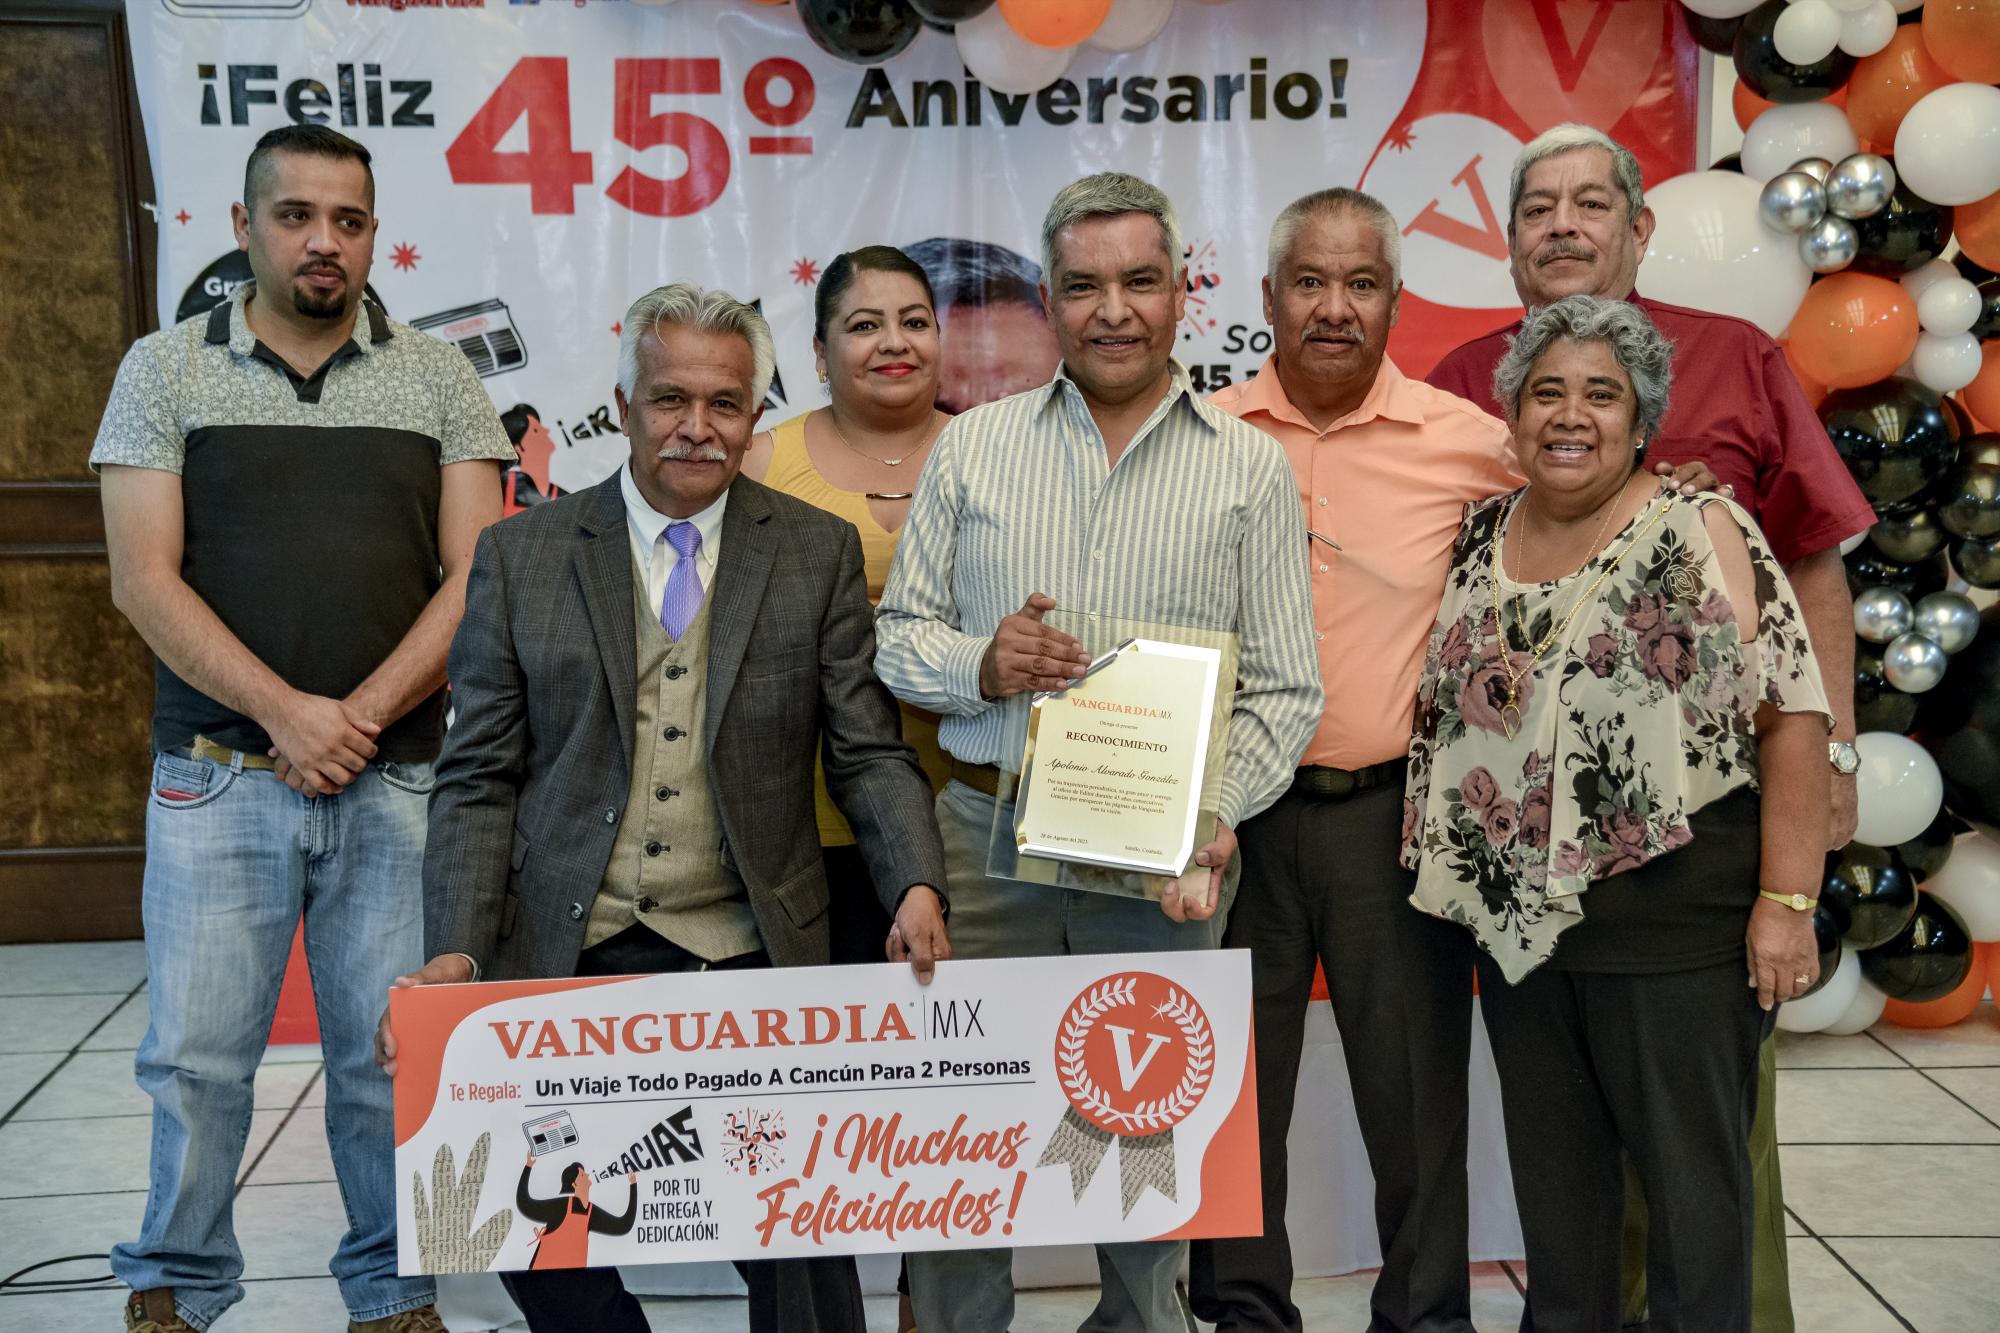 $!La familia de Apolonio Alvarado se reúne para celebrar sus 45 años de dedicación en VANGUARDIA, resaltando su influencia en el periodismo y su impacto en la comunidad.